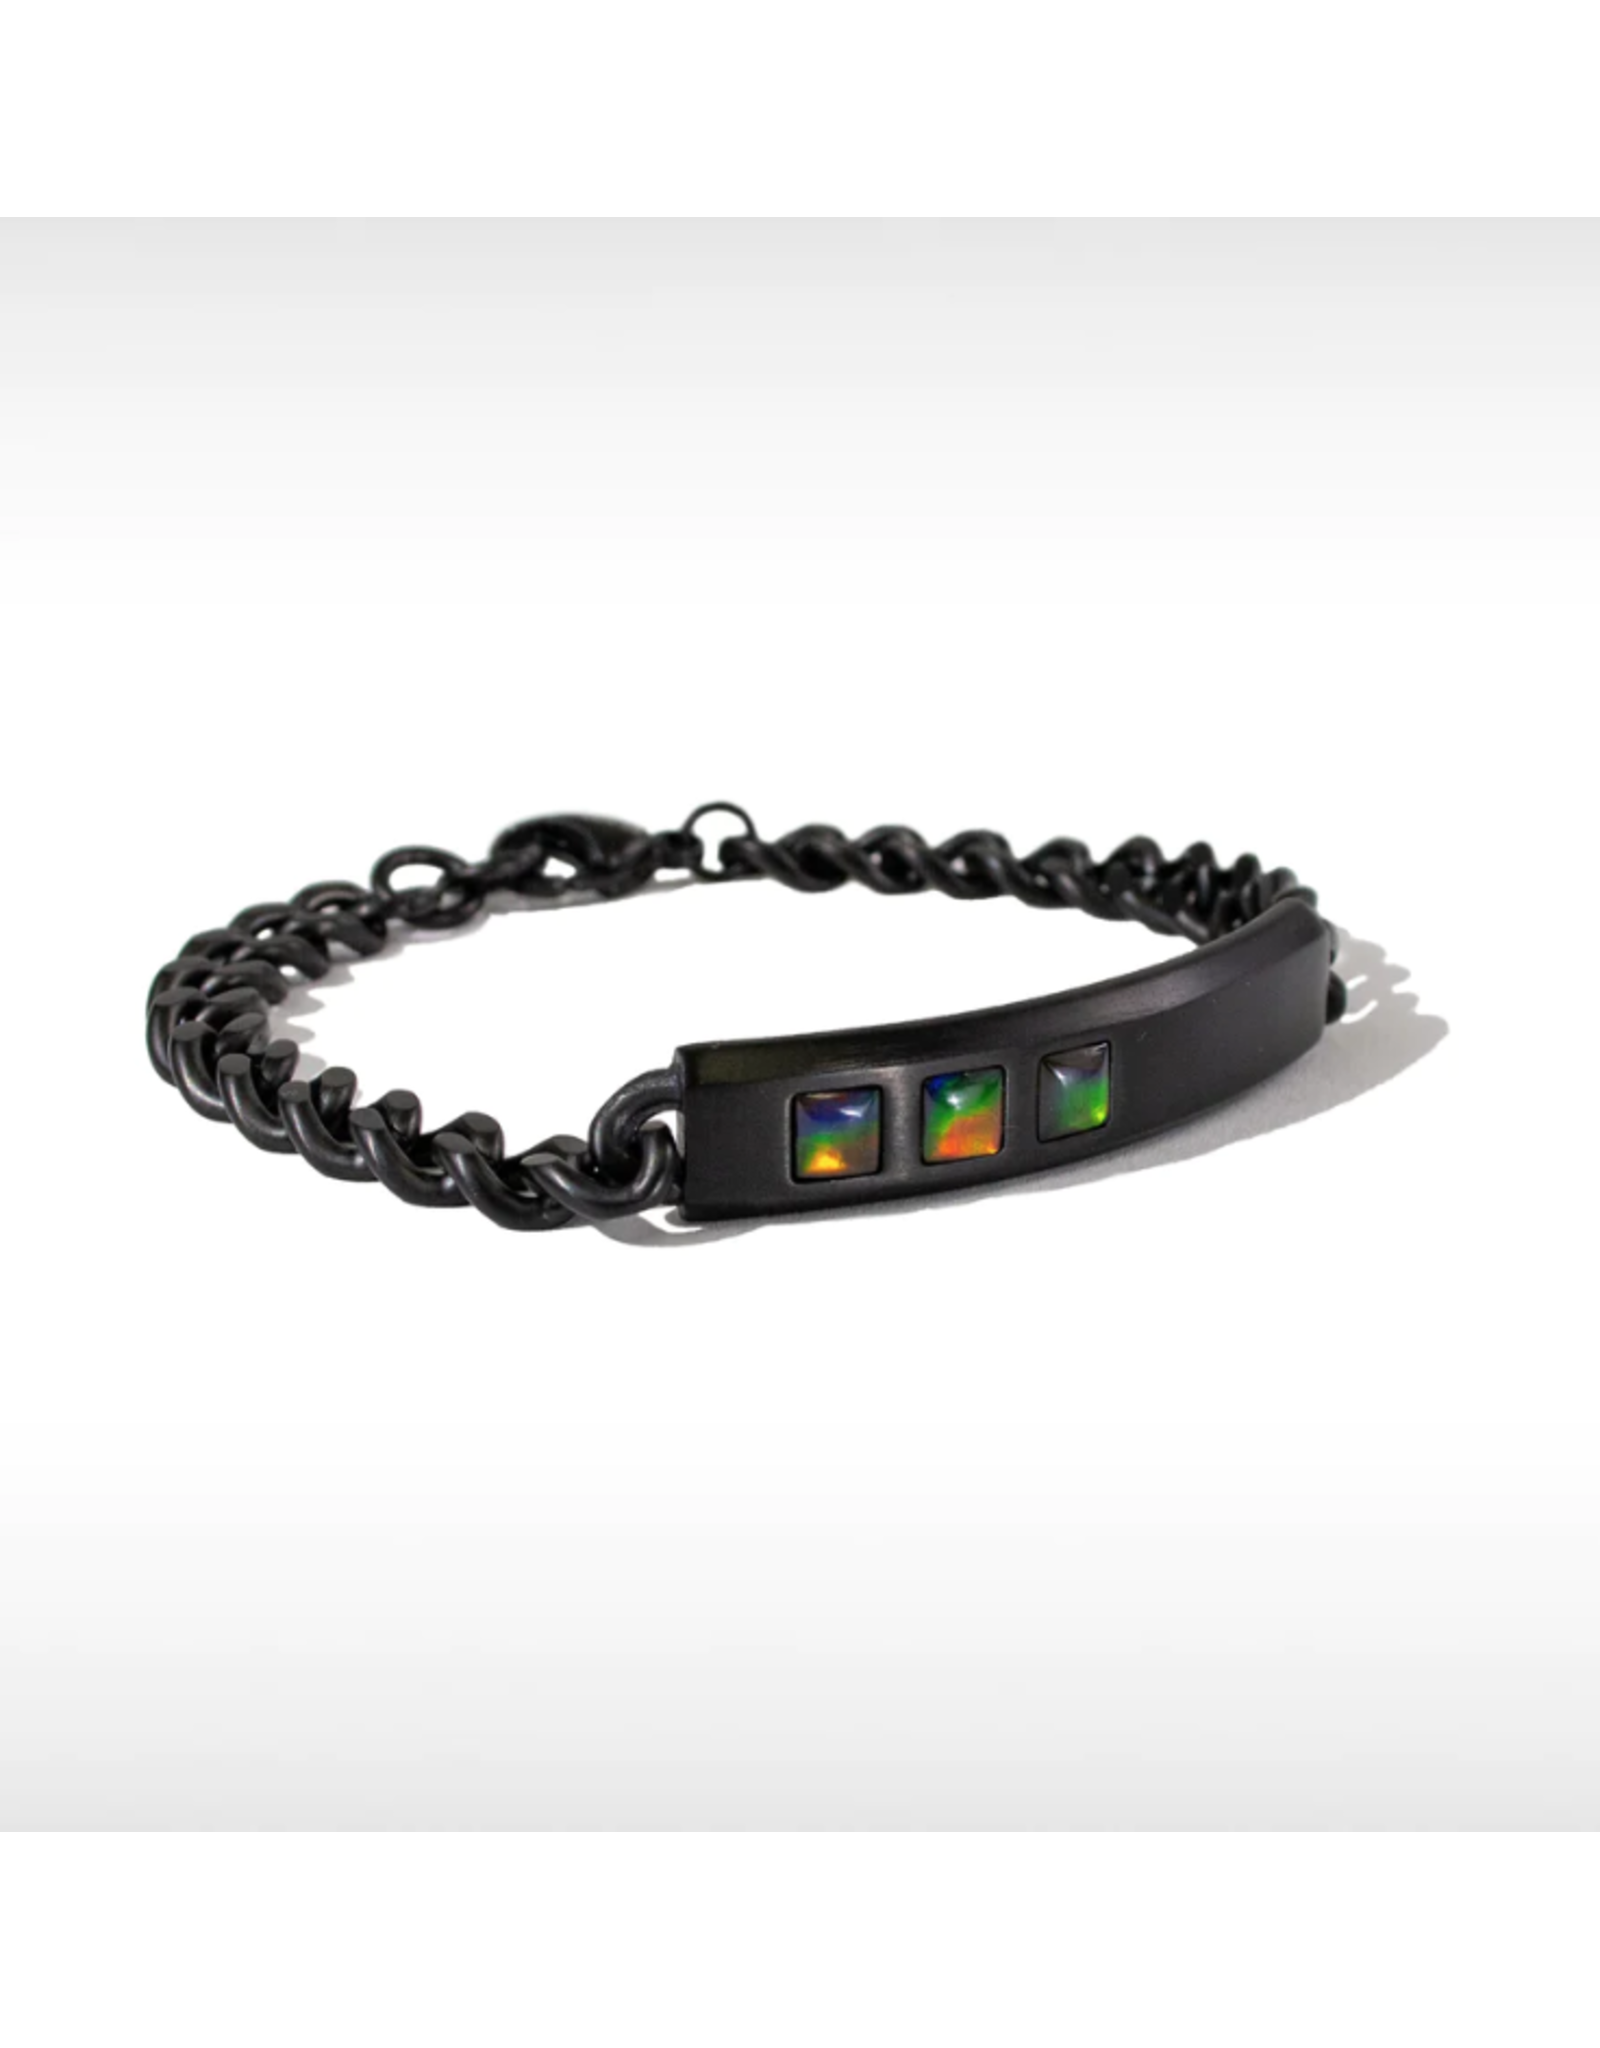 Bracelet Midnight Noir Mat - JTTB00266A1